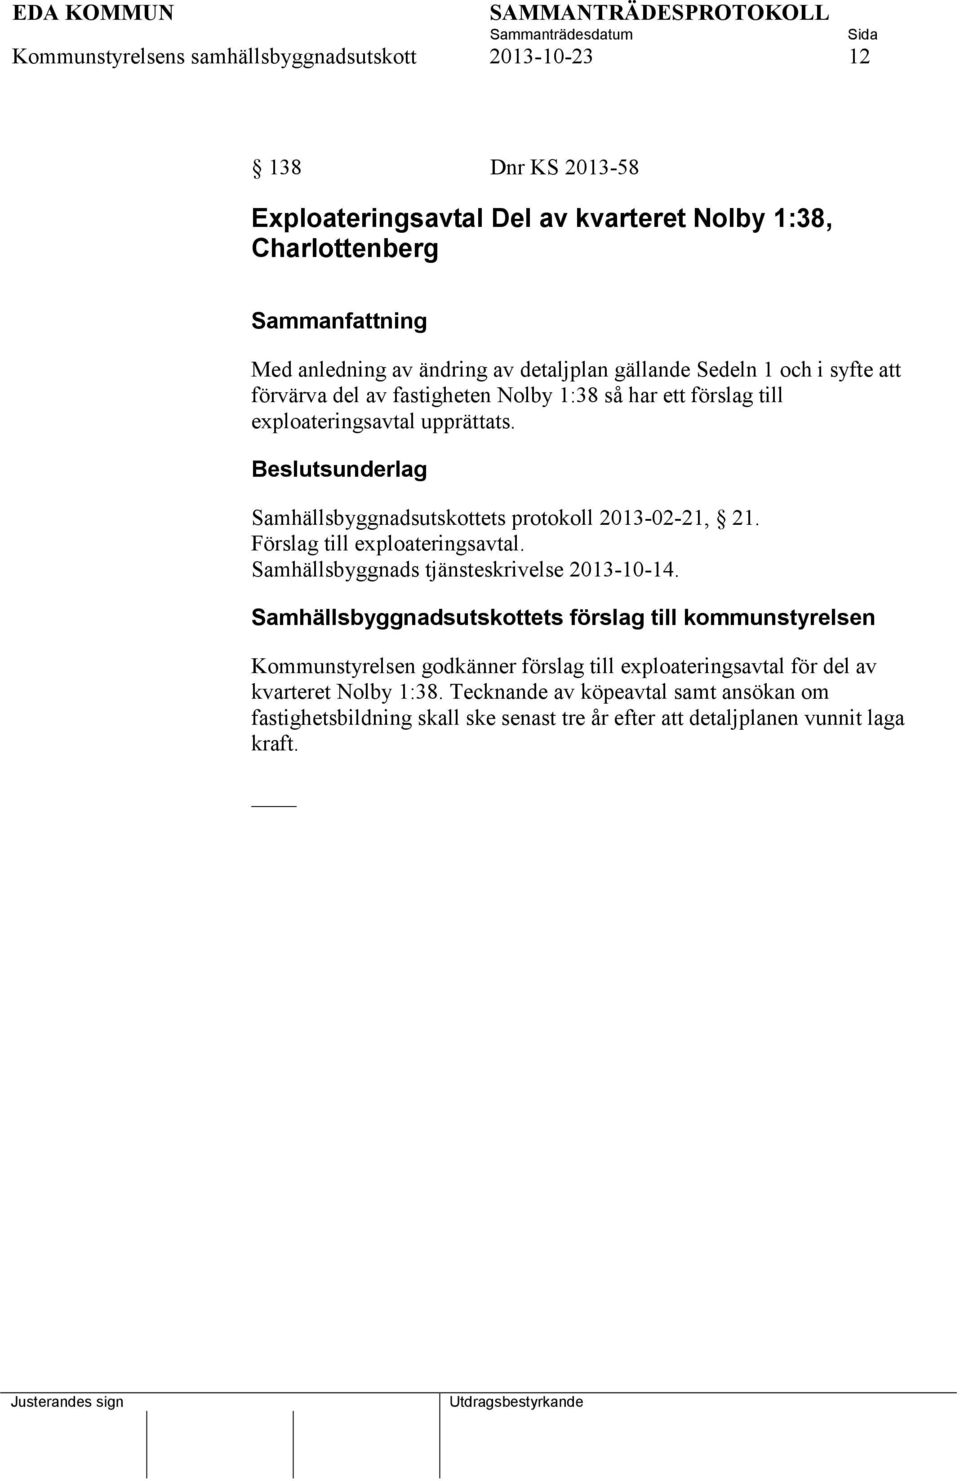 Samhällsbyggnadsutskottets protokoll 2013-02-21, 21. Förslag till exploateringsavtal. Samhällsbyggnads tjänsteskrivelse 2013-10-14.